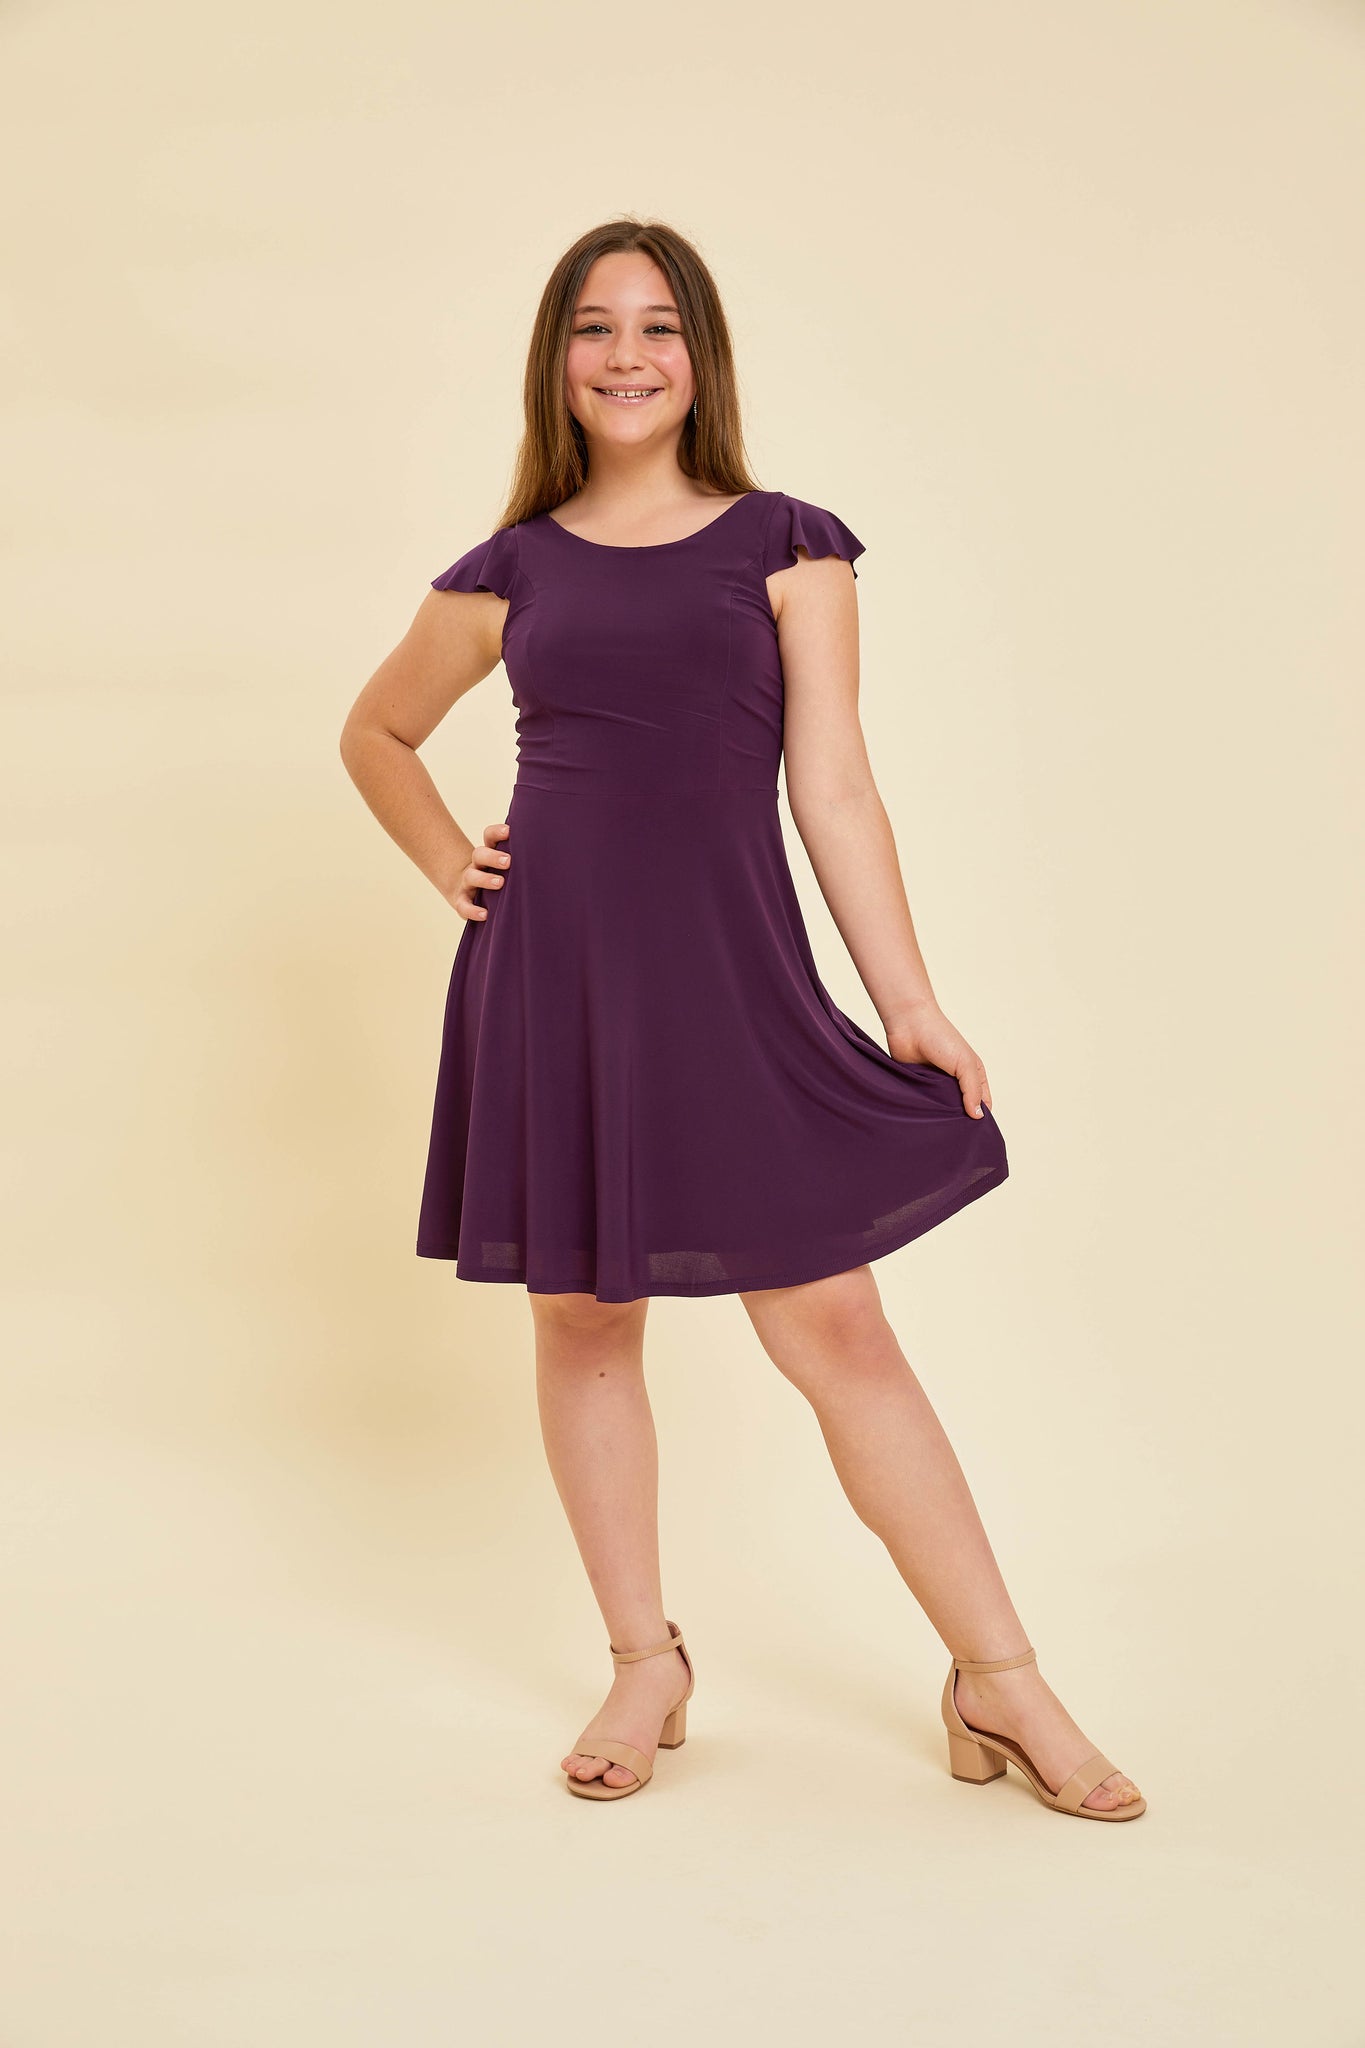 Blonde girl in a purple plum flutter sleeve dress with nude heel.Blonde girl in a purple plum flutter sleeve dress with nude heel.